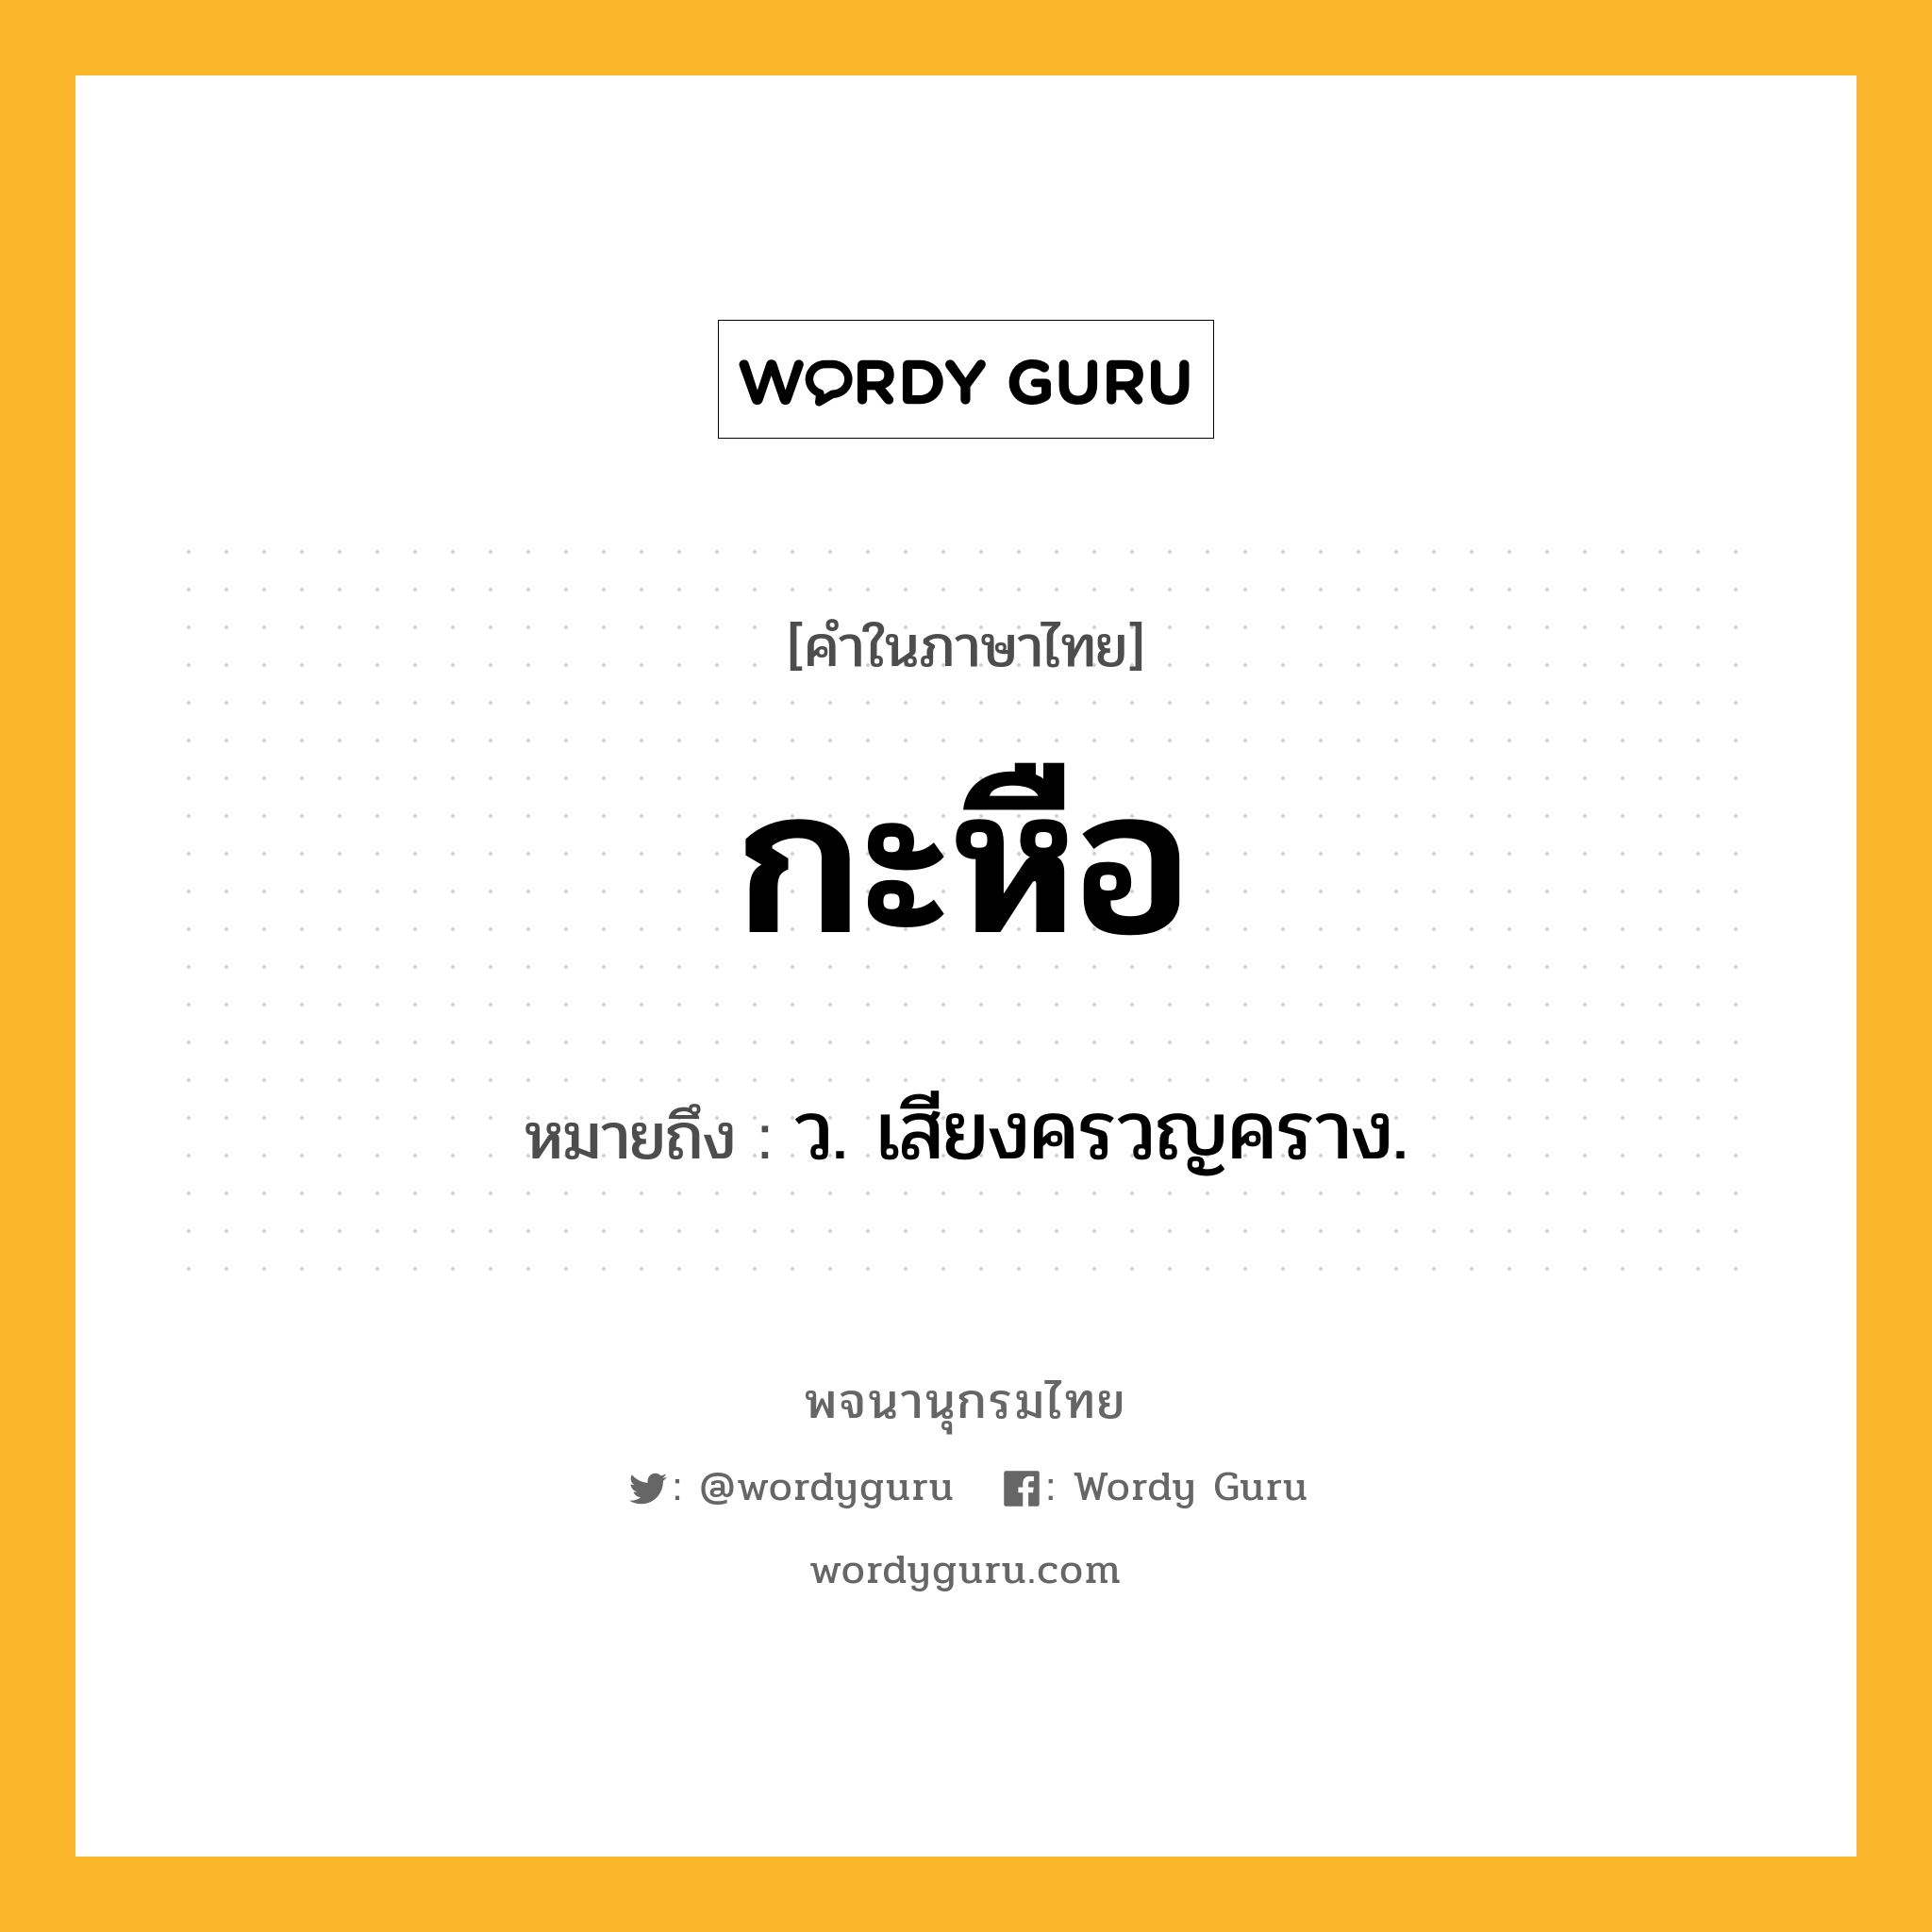 กะหือ ความหมาย หมายถึงอะไร?, คำในภาษาไทย กะหือ หมายถึง ว. เสียงครวญคราง.